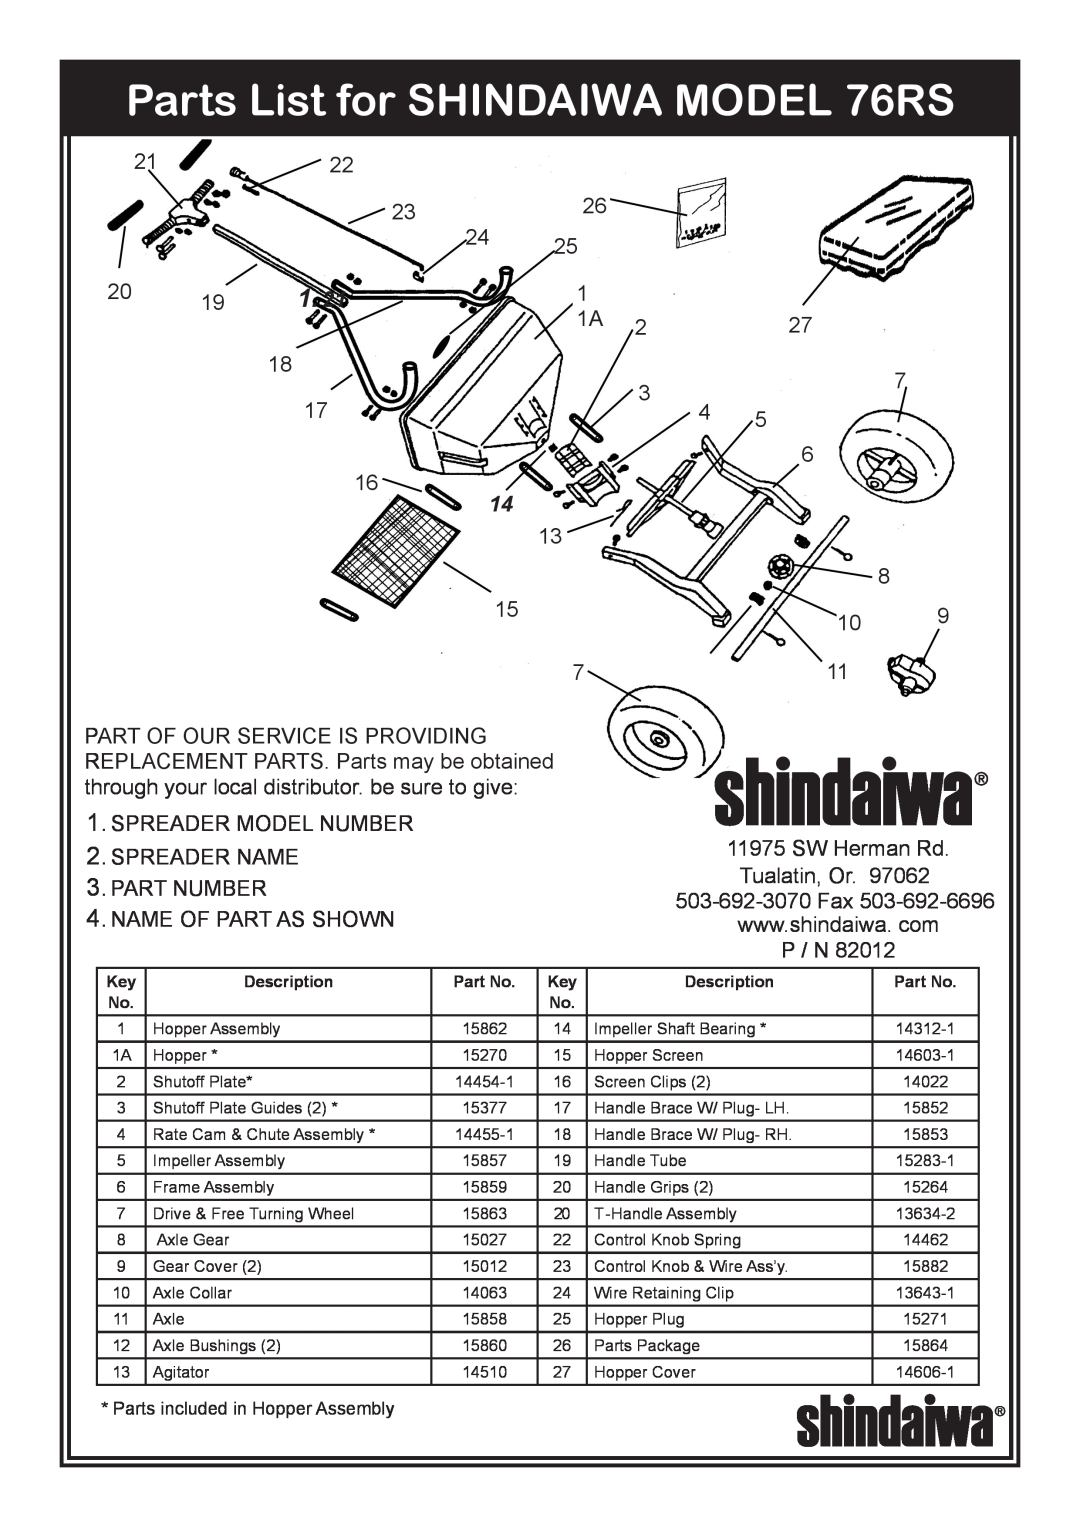 Shindaiwa Parts List for SHINDAIWA MODEL 76RS, 2122, SPREADER MODEL NUMBER 2. SPREADER NAME 3. PART NUMBER, P / N 